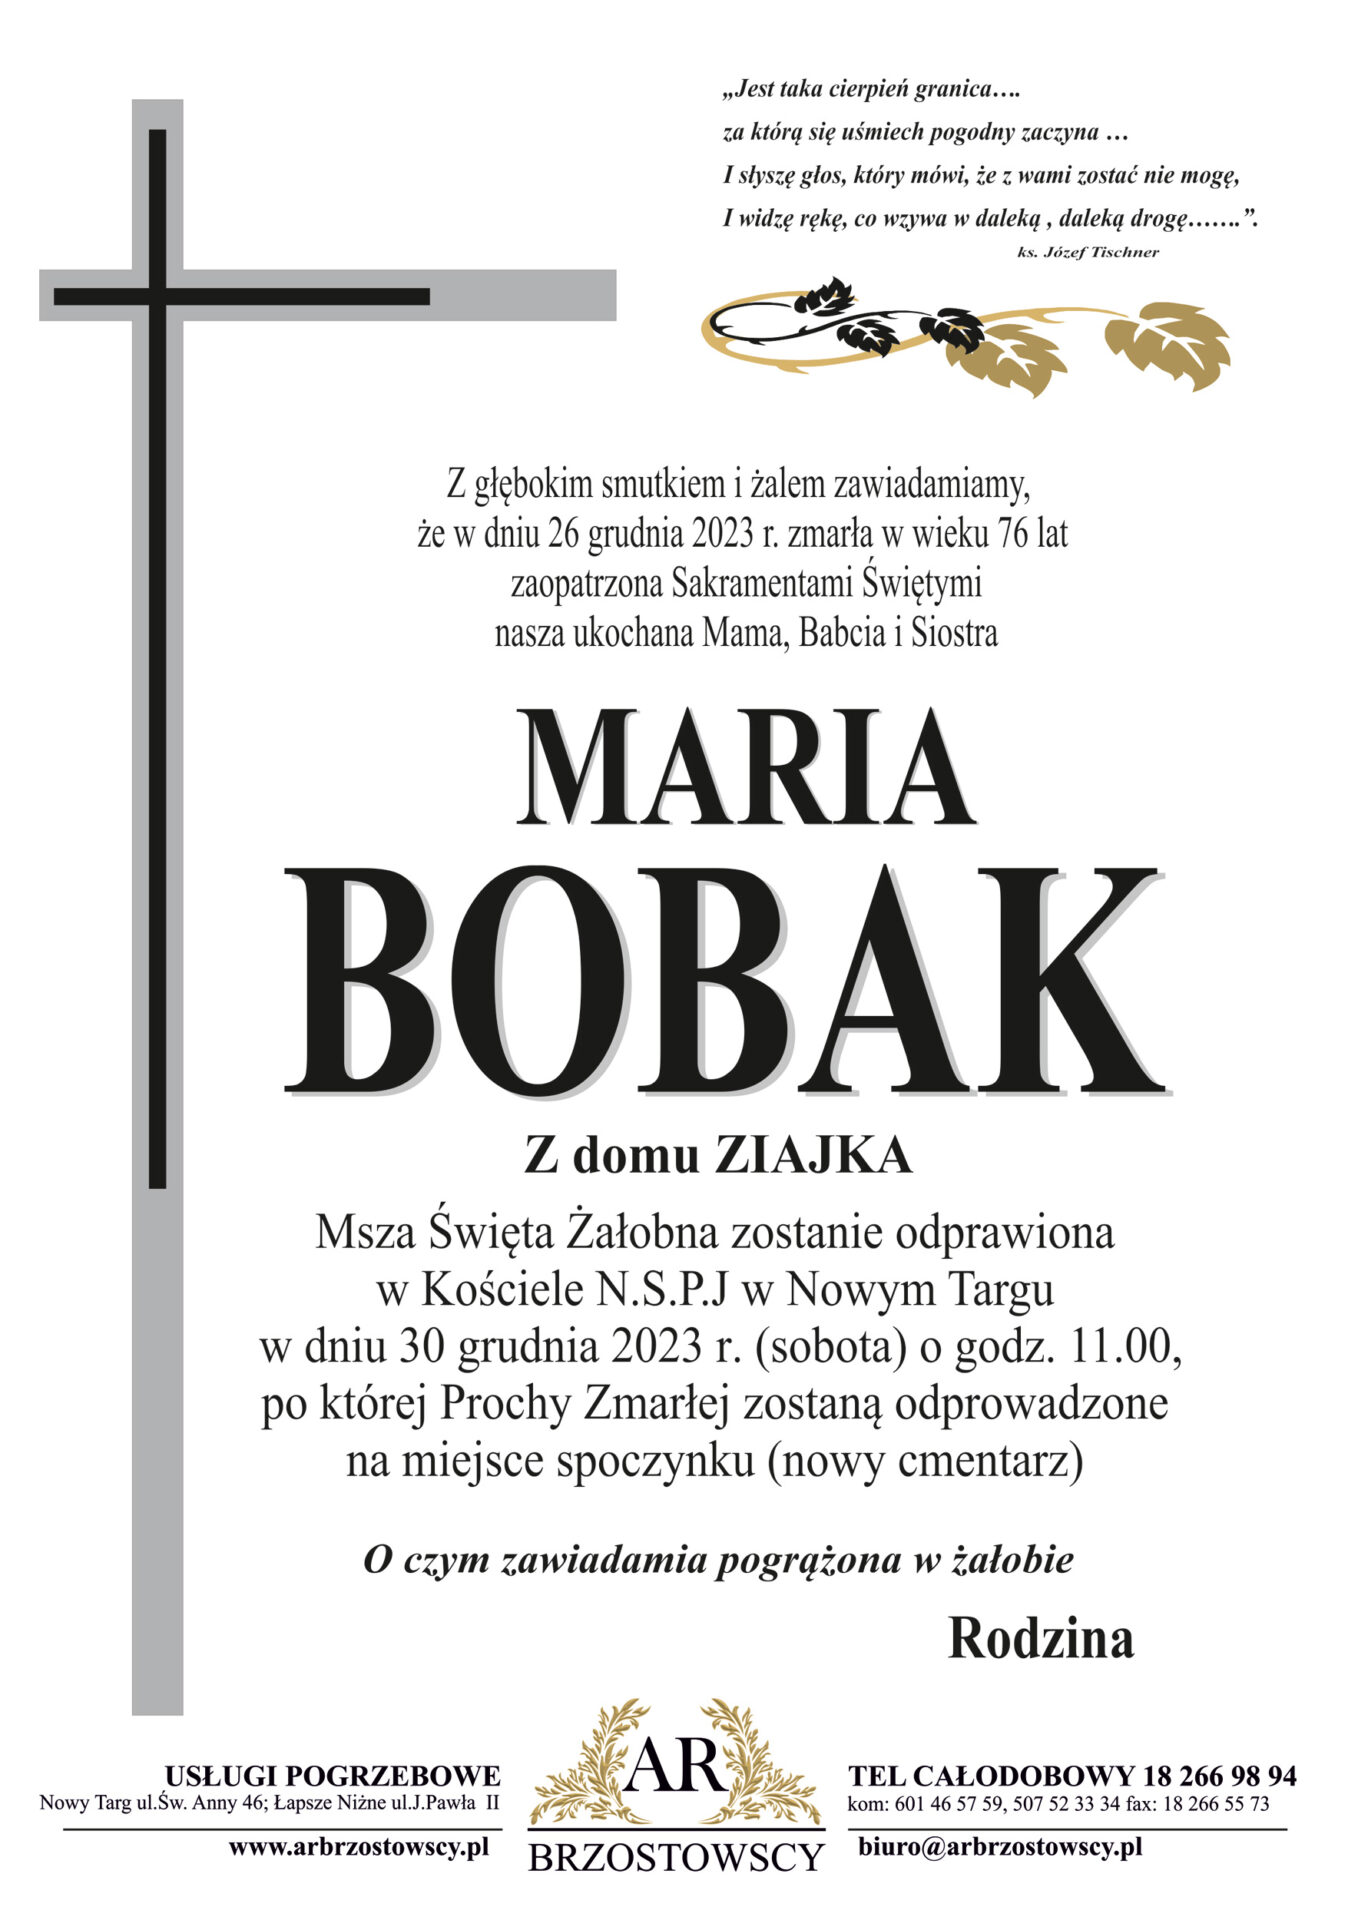 Maria Bobak